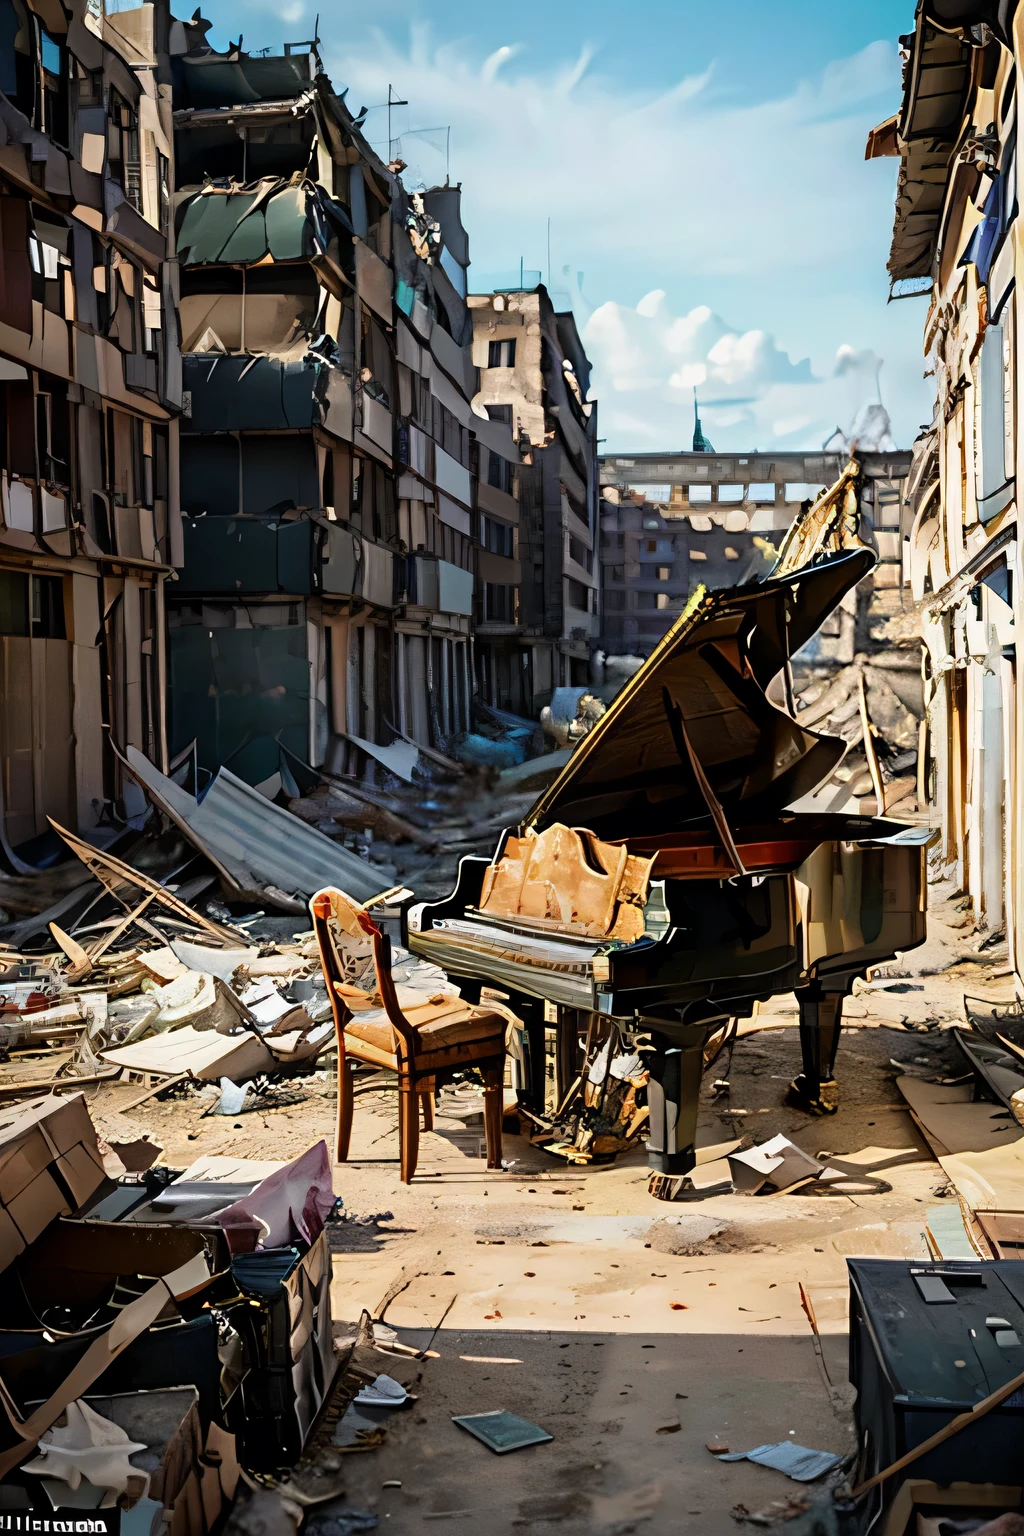 戦争で荒廃したベルリンの真っ只中, そこにはグランドピアノが置いてあった, 瓦礫の中で奇跡的に無傷. このピアノはかつて戦争勃発時に街から逃げた有名なピアニストの所有物だった。, 愛する楽器を残して.